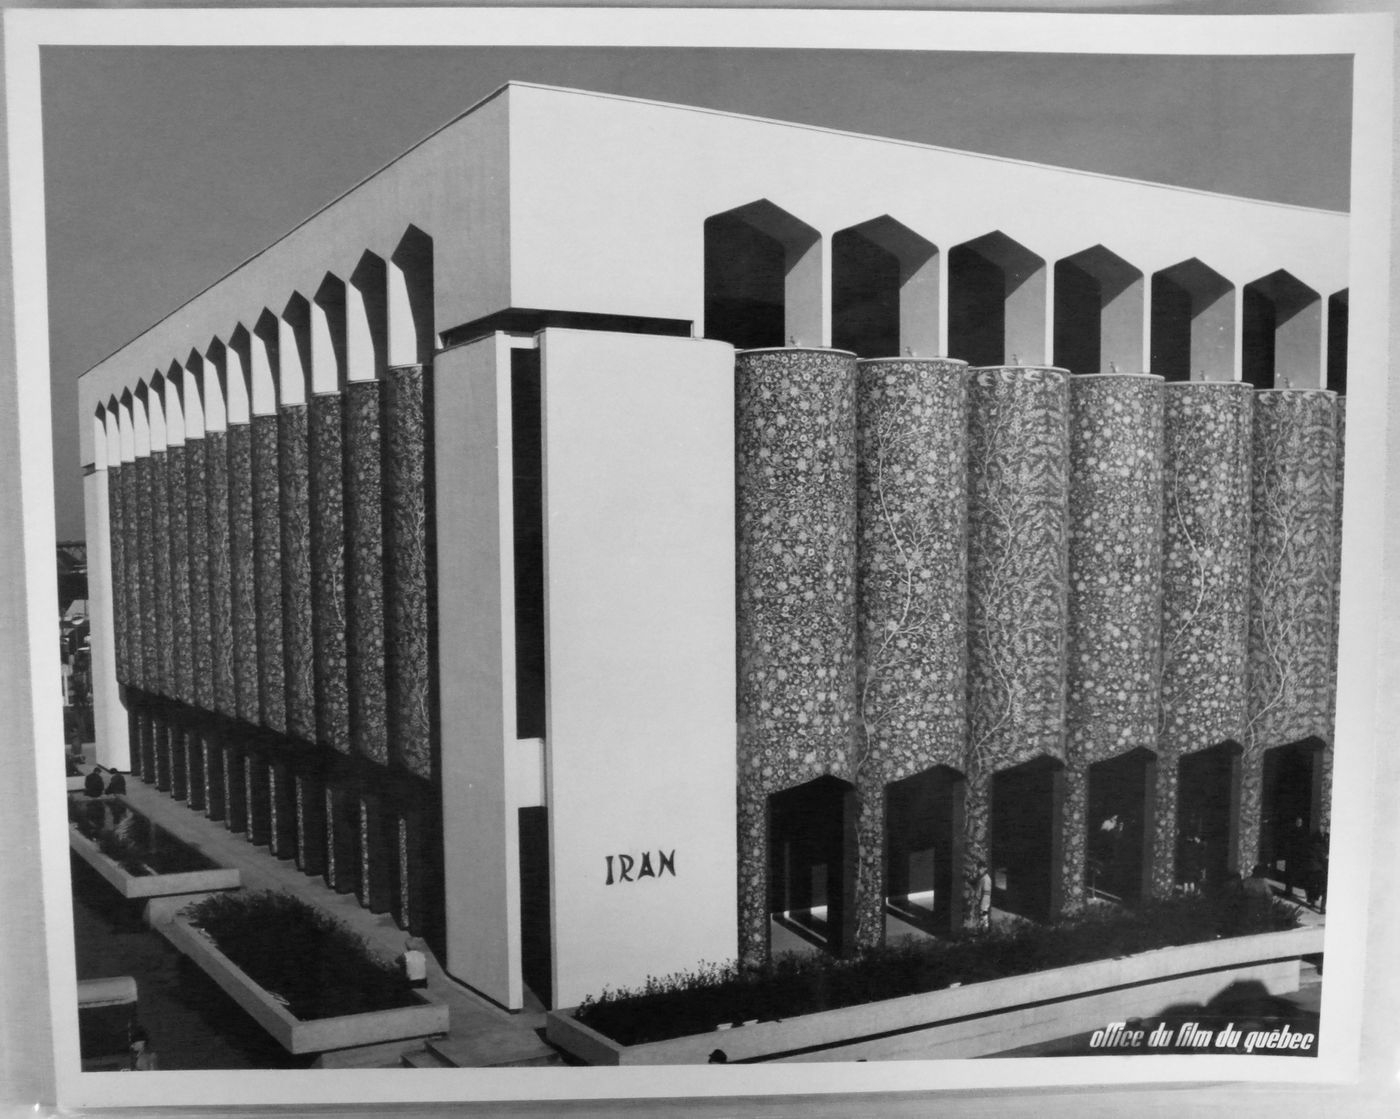 View of the Pavilion of Iran, Expo 67, Montréal, Québec